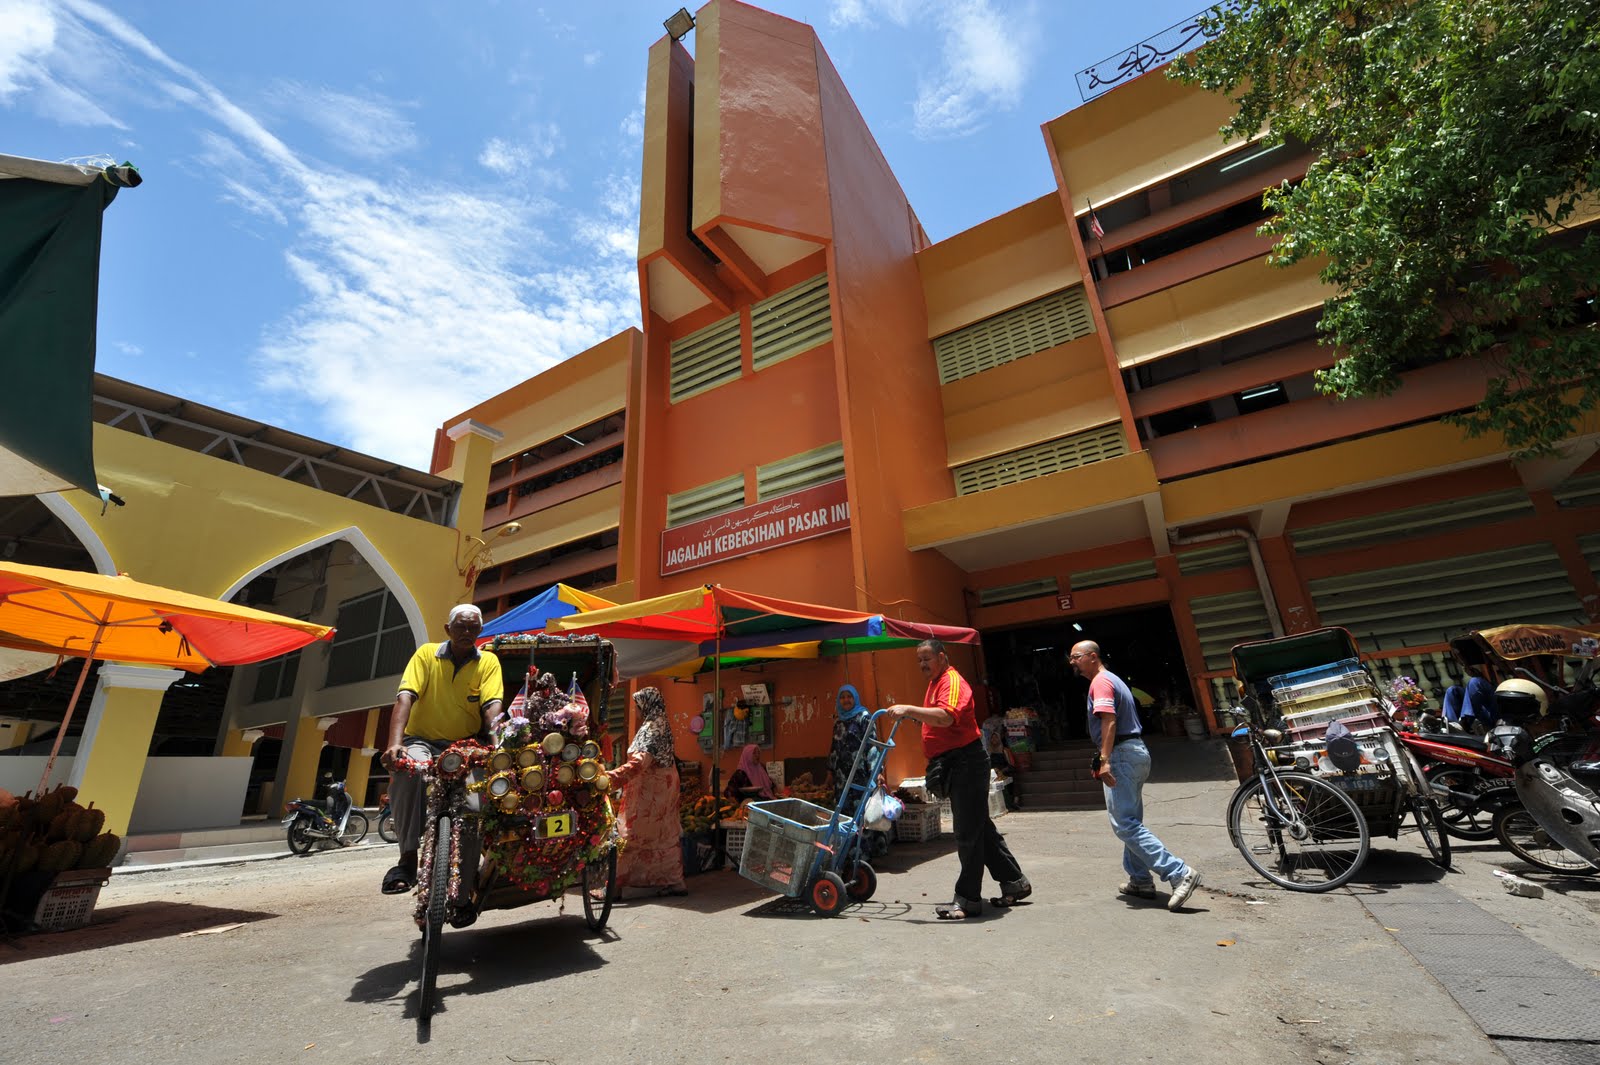 Mohd sharmi: Pasar Besar Siti khadijah, kota Bharu Kelantan